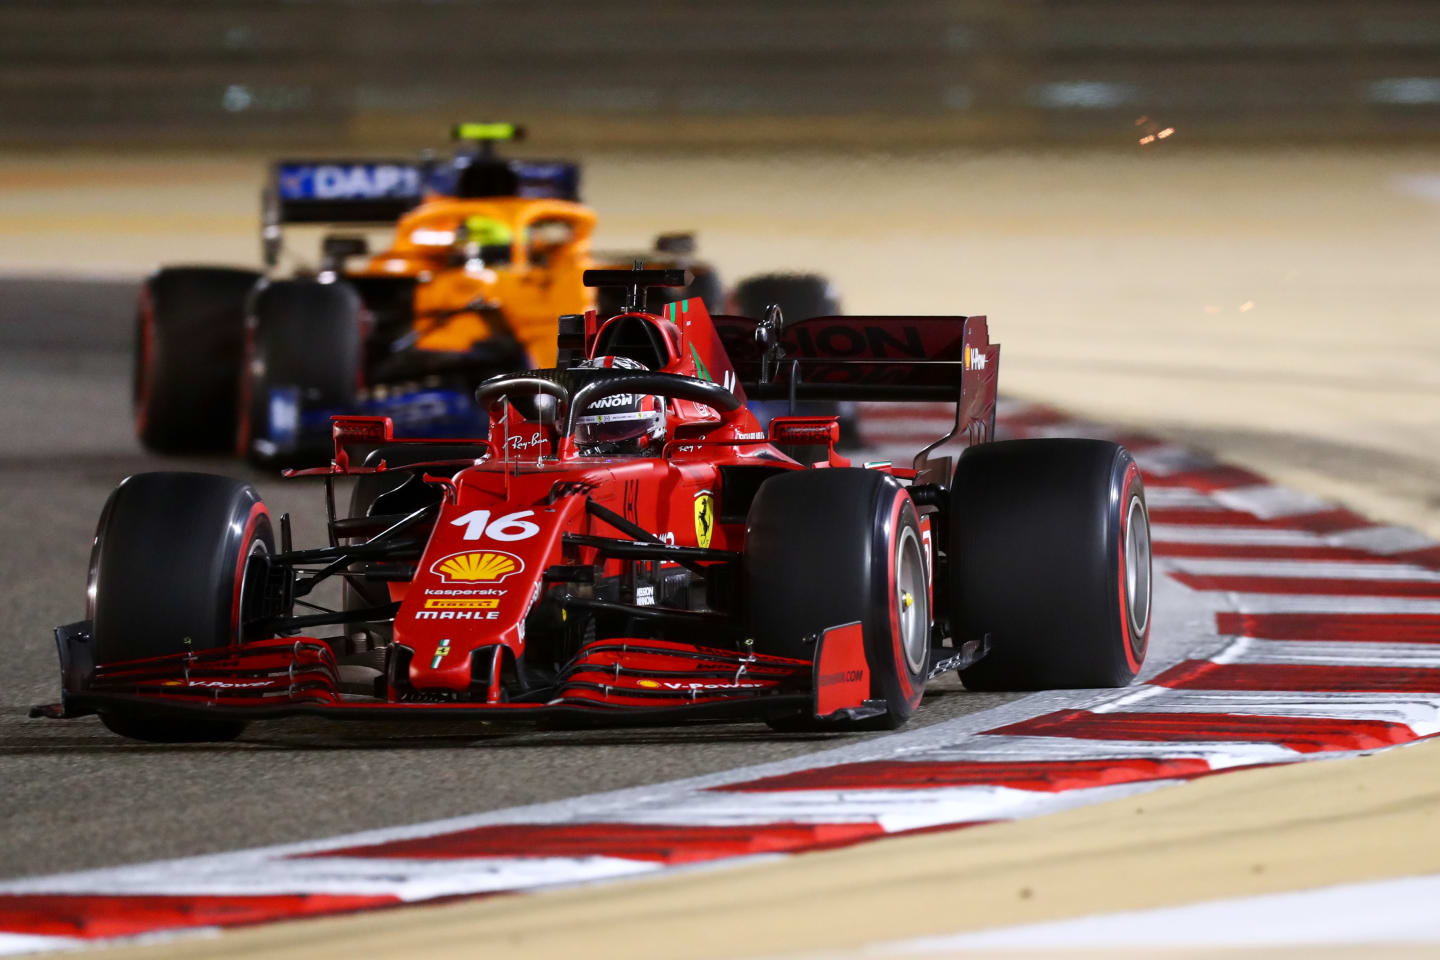 BAHRAIN, BAHRAIN - MARCH 28: Charles Leclerc of Monaco driving the (16) Scuderia Ferrari SF21 ahead